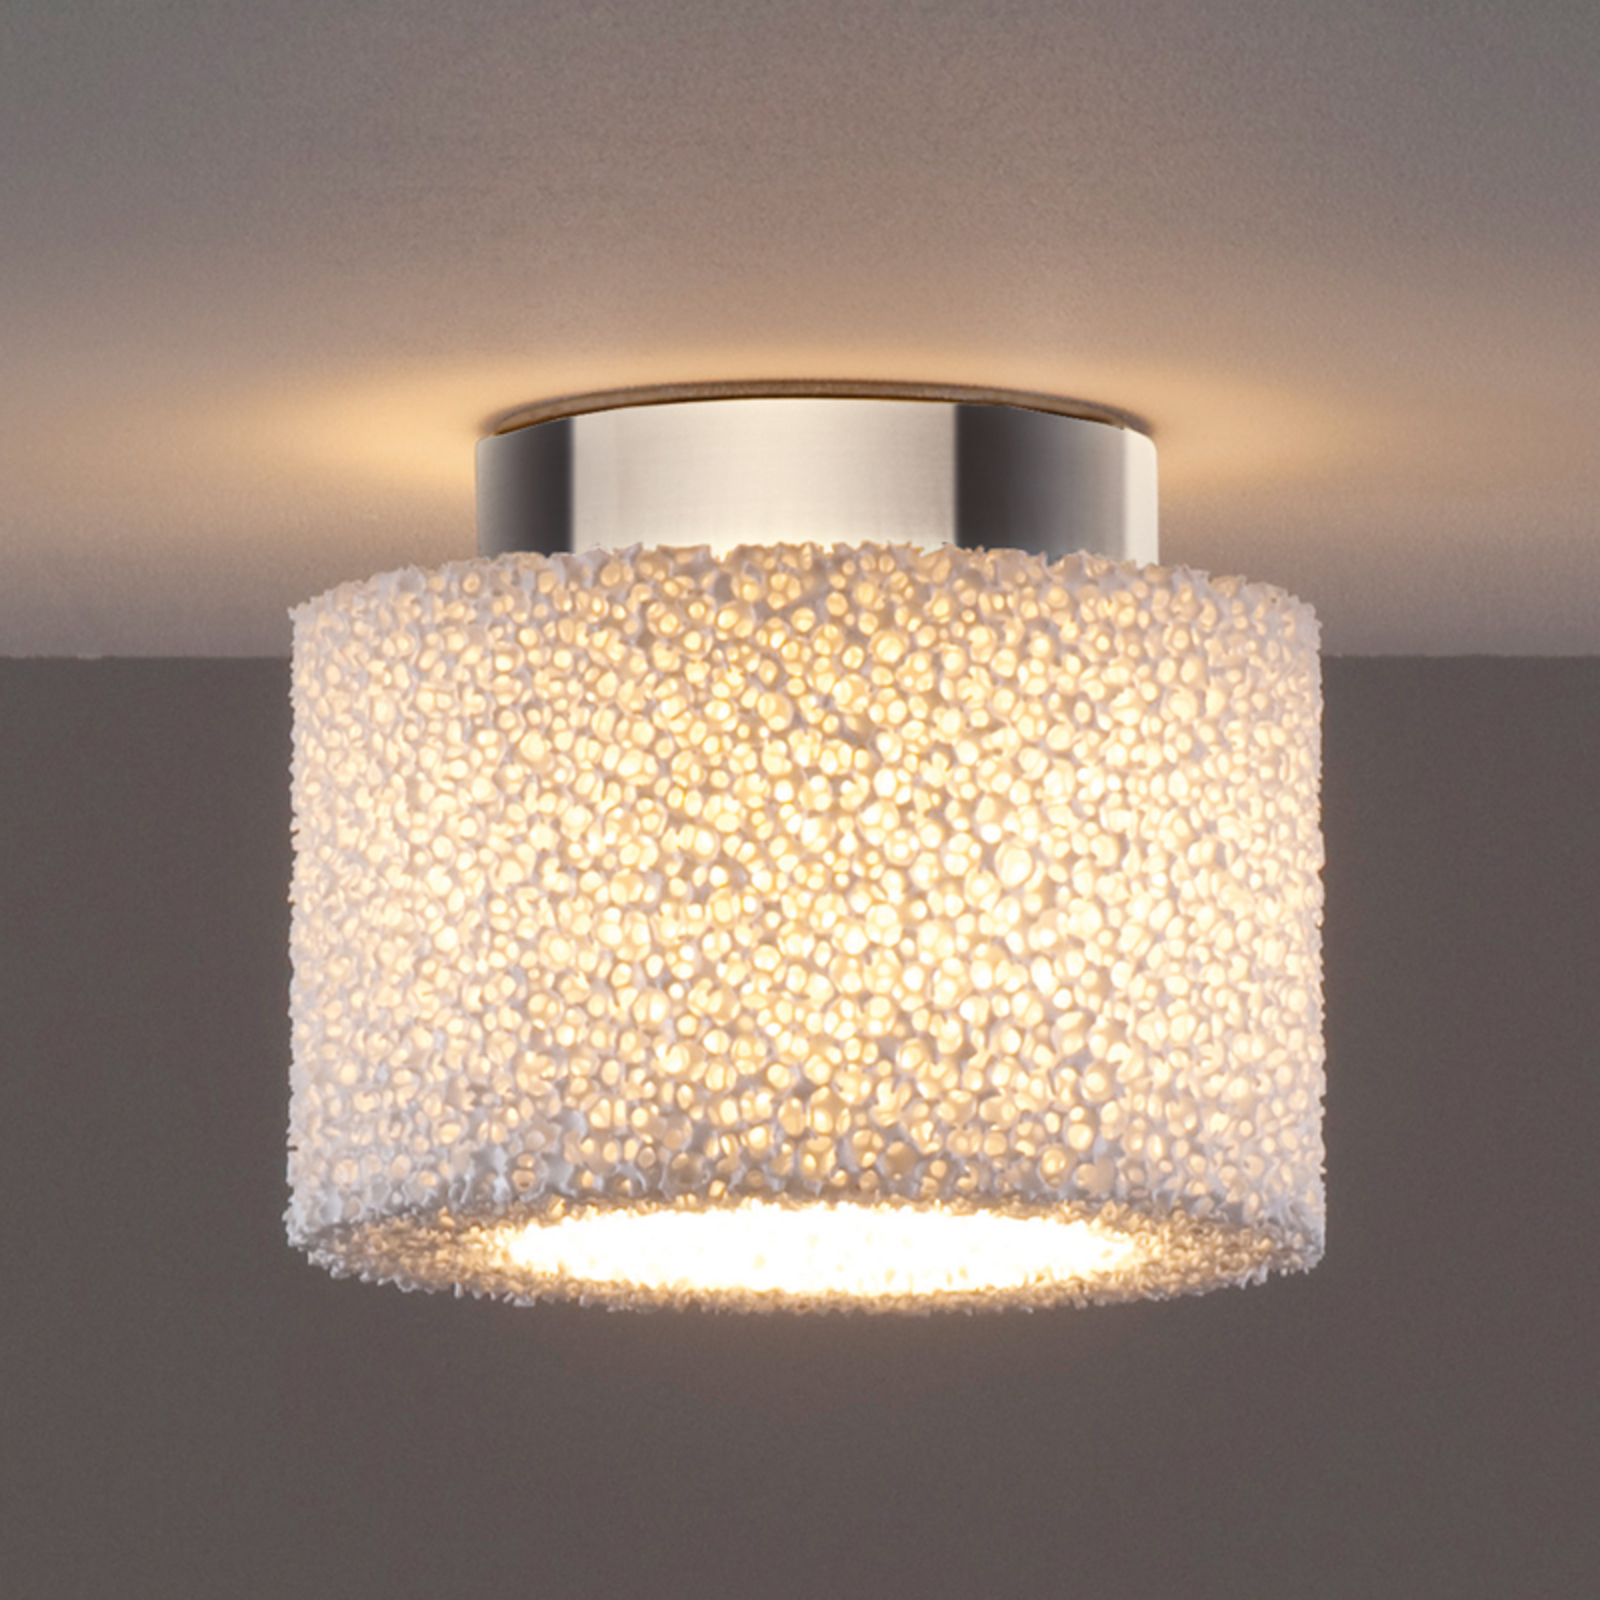 Reef - een LED plafondlamp van keramische schuim